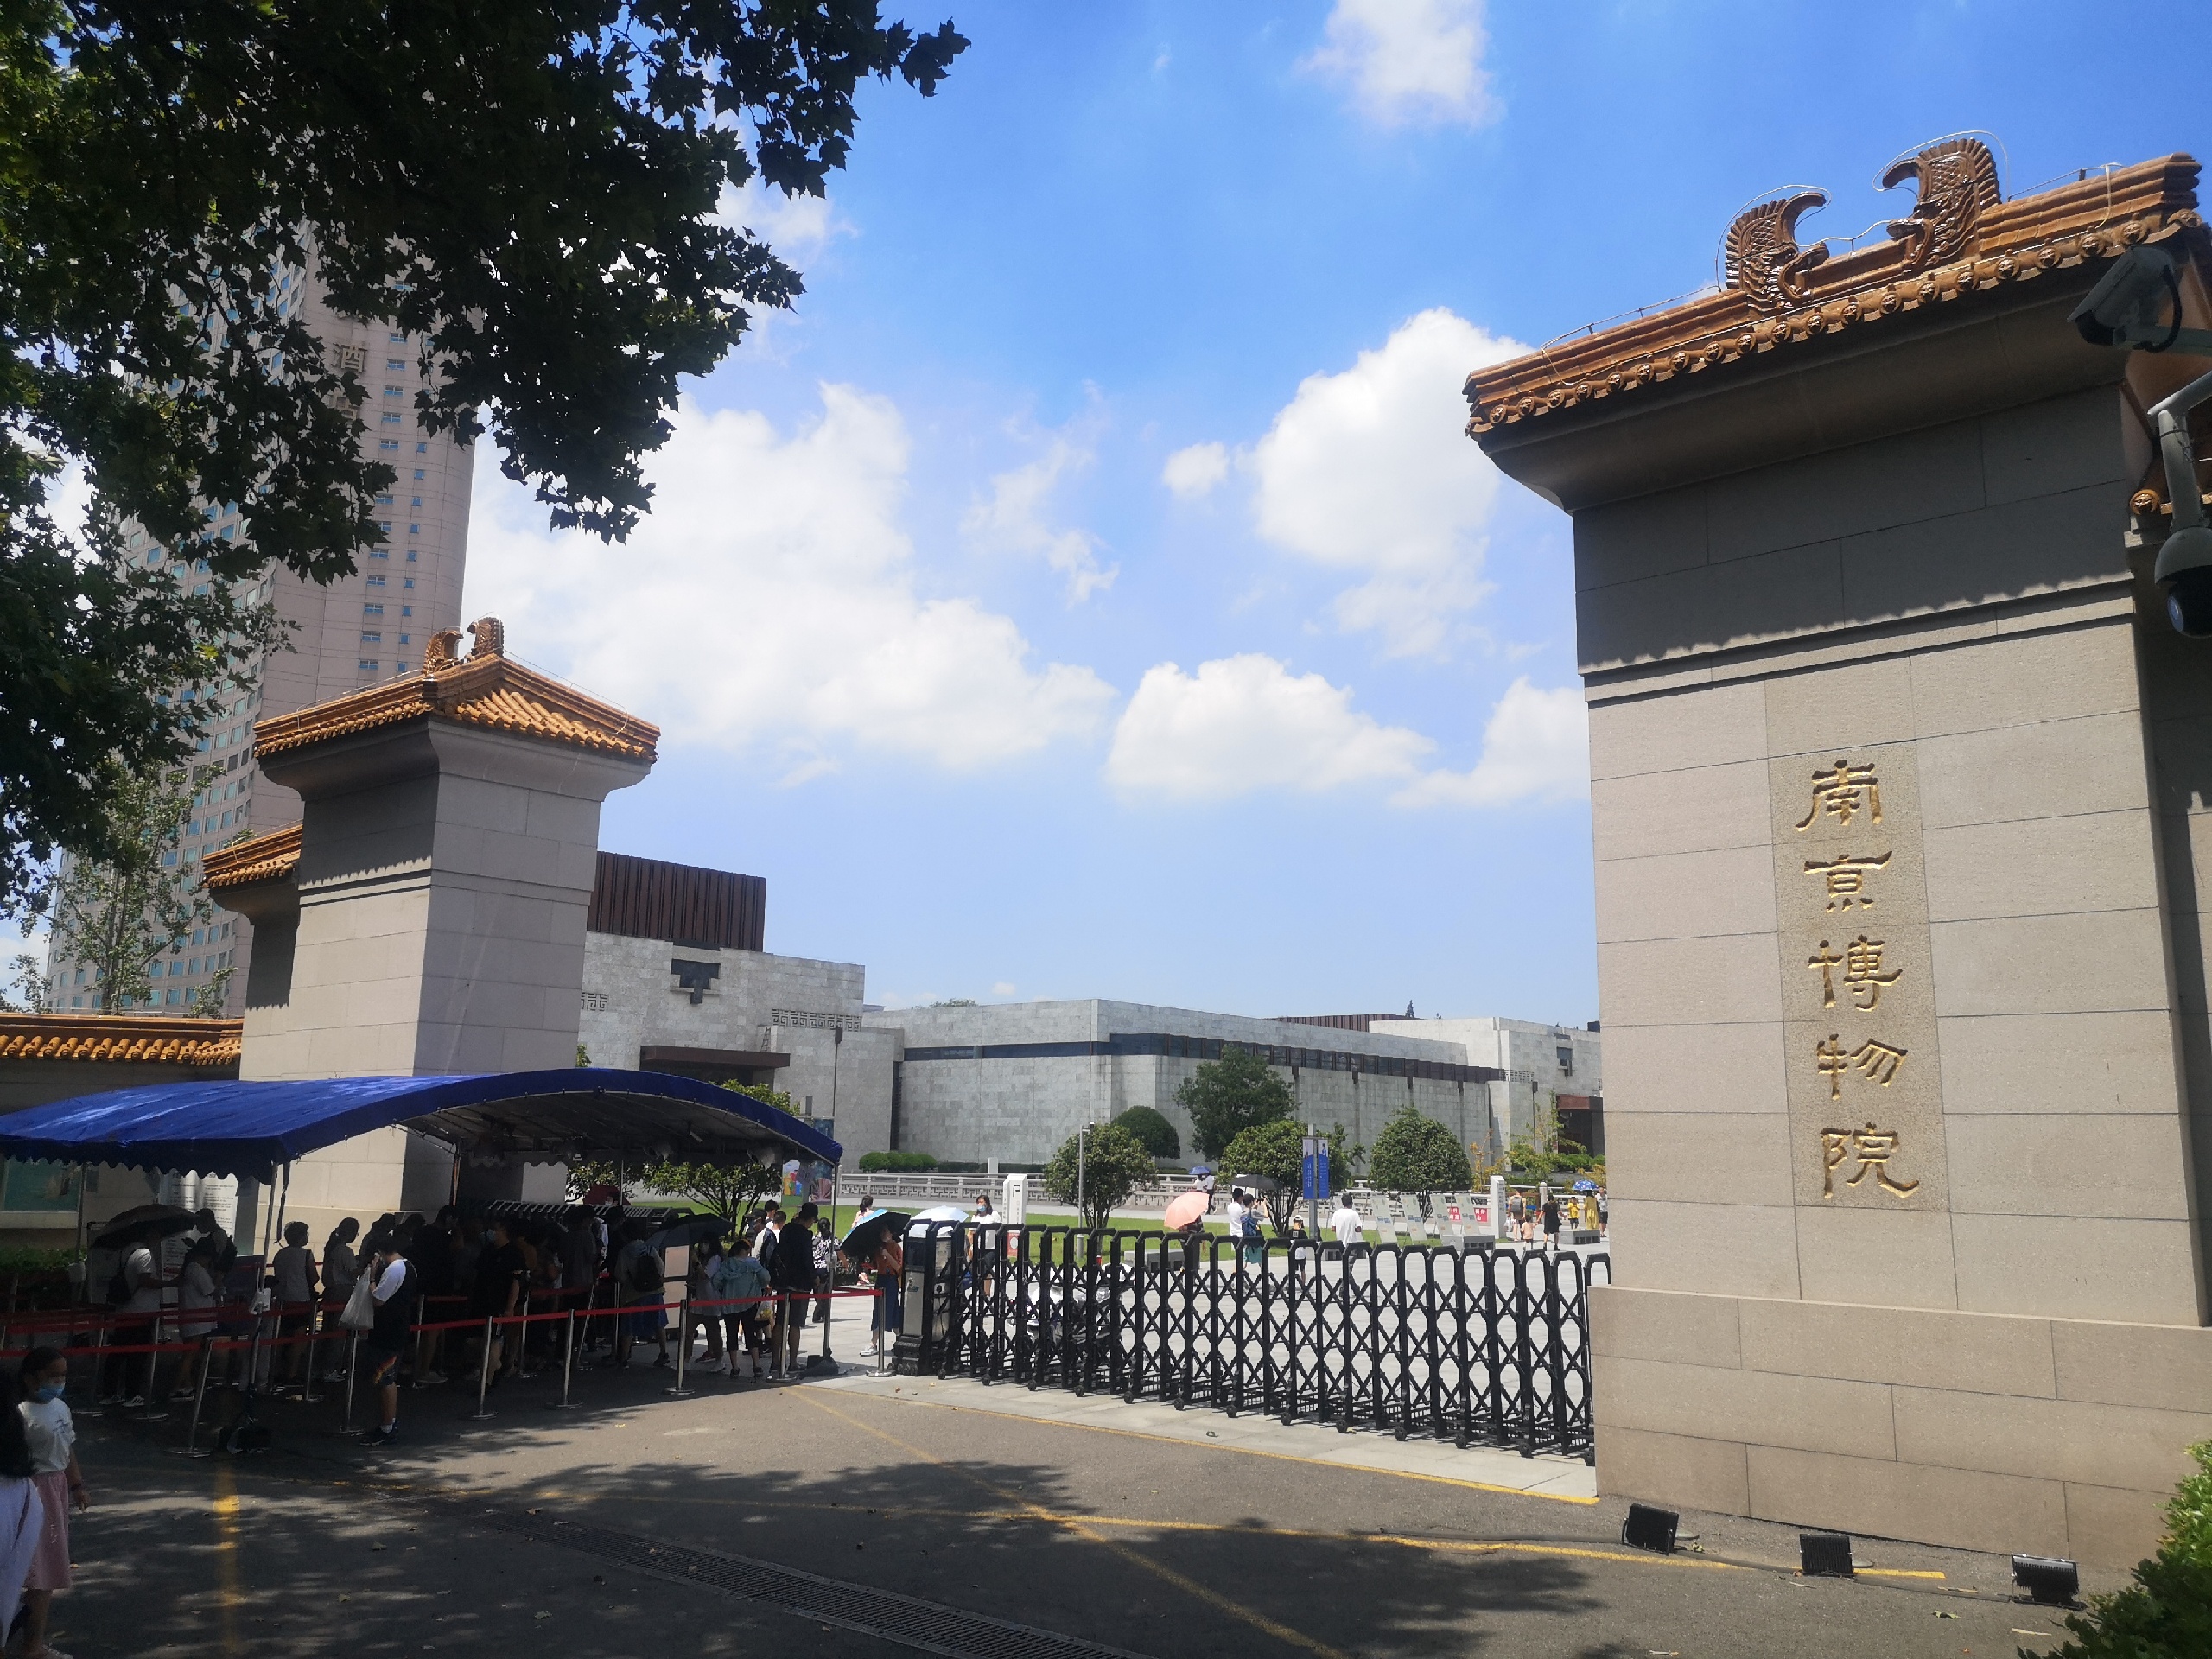 南京一日游-打卡中山陵、美龄宫、南京博物馆